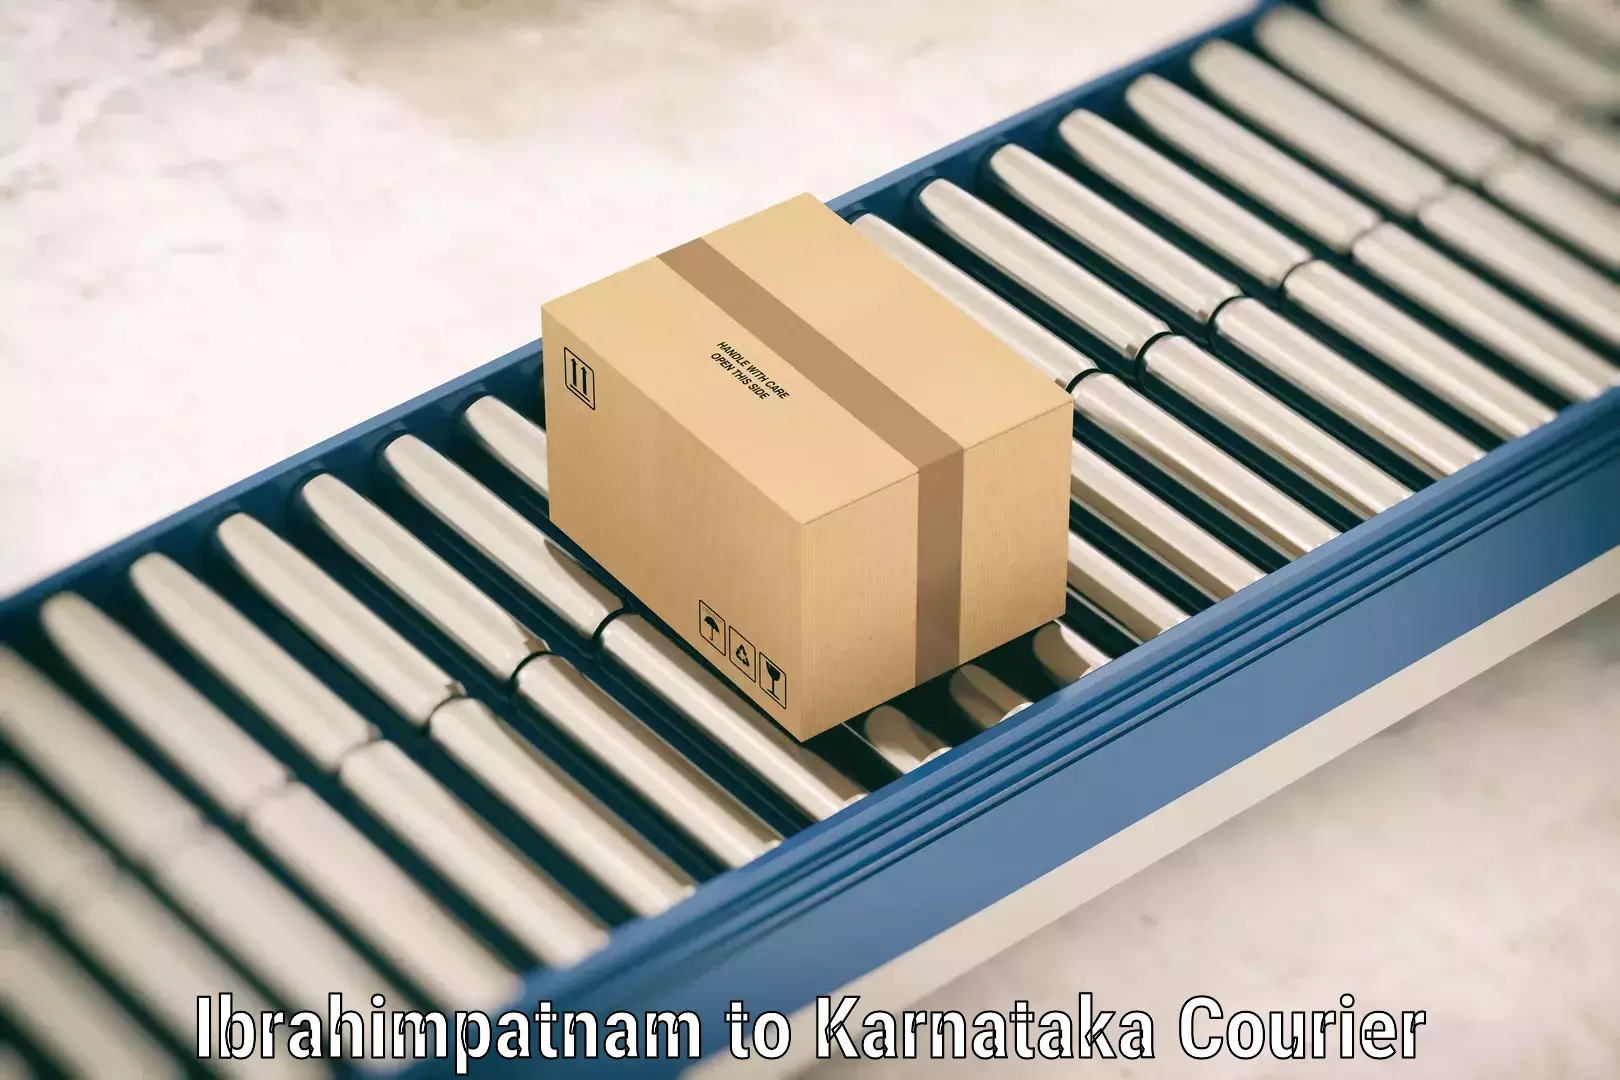 Single item baggage courier Ibrahimpatnam to Karnataka